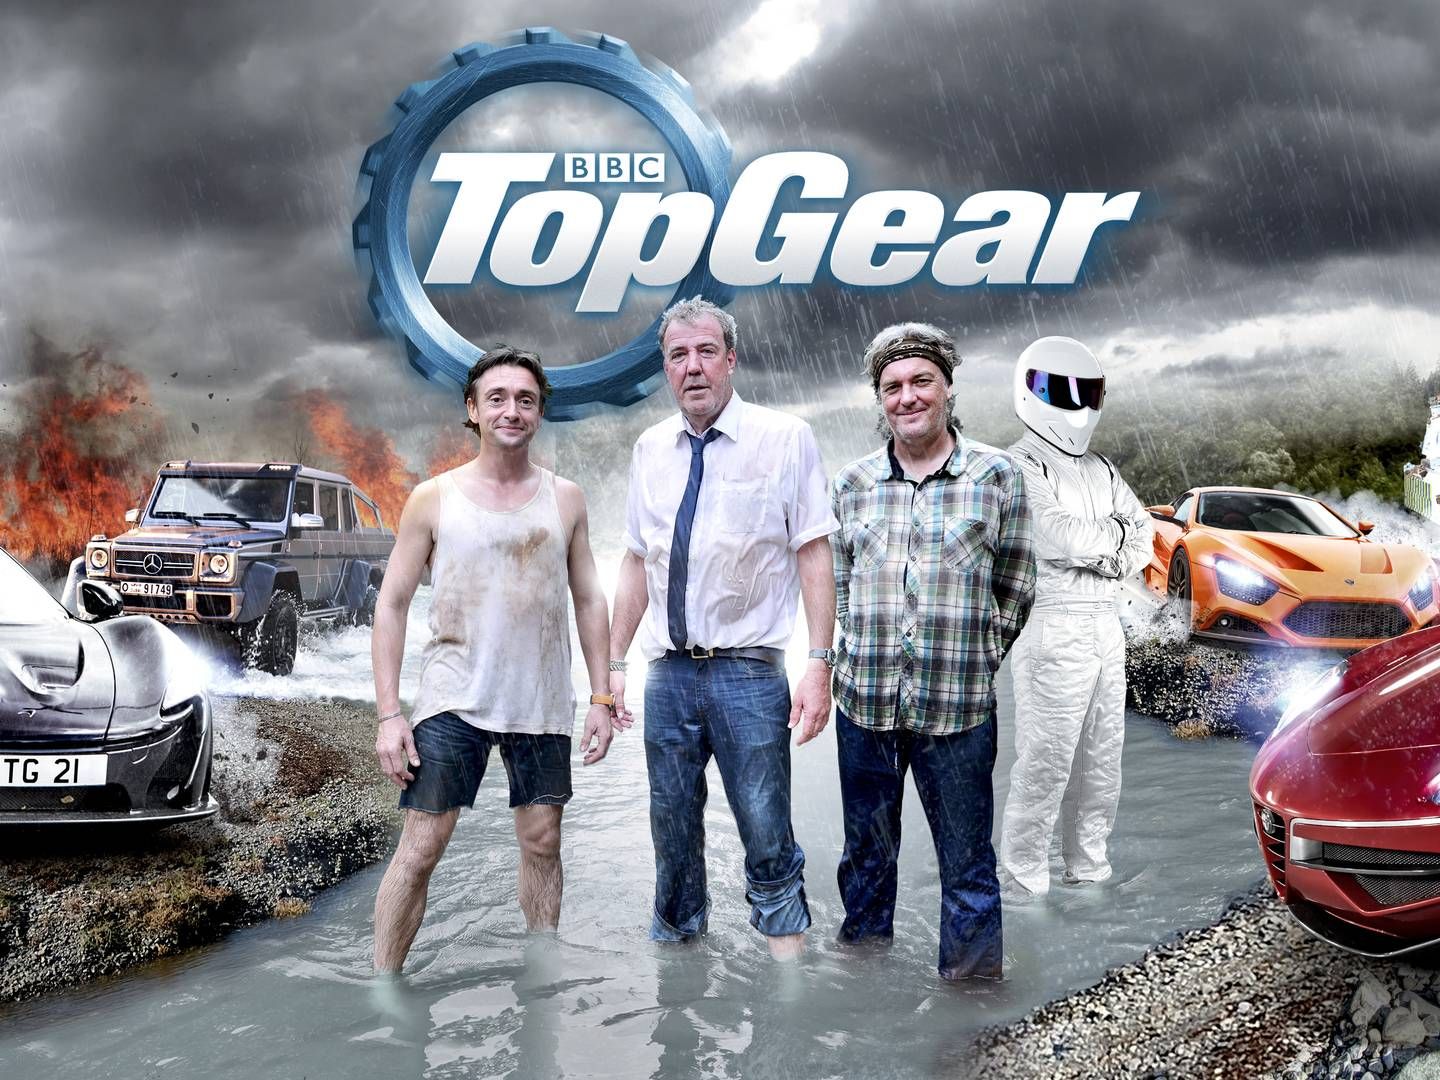 Venner-stjerne slutter til nyt "Top Gear" — MediaWatch